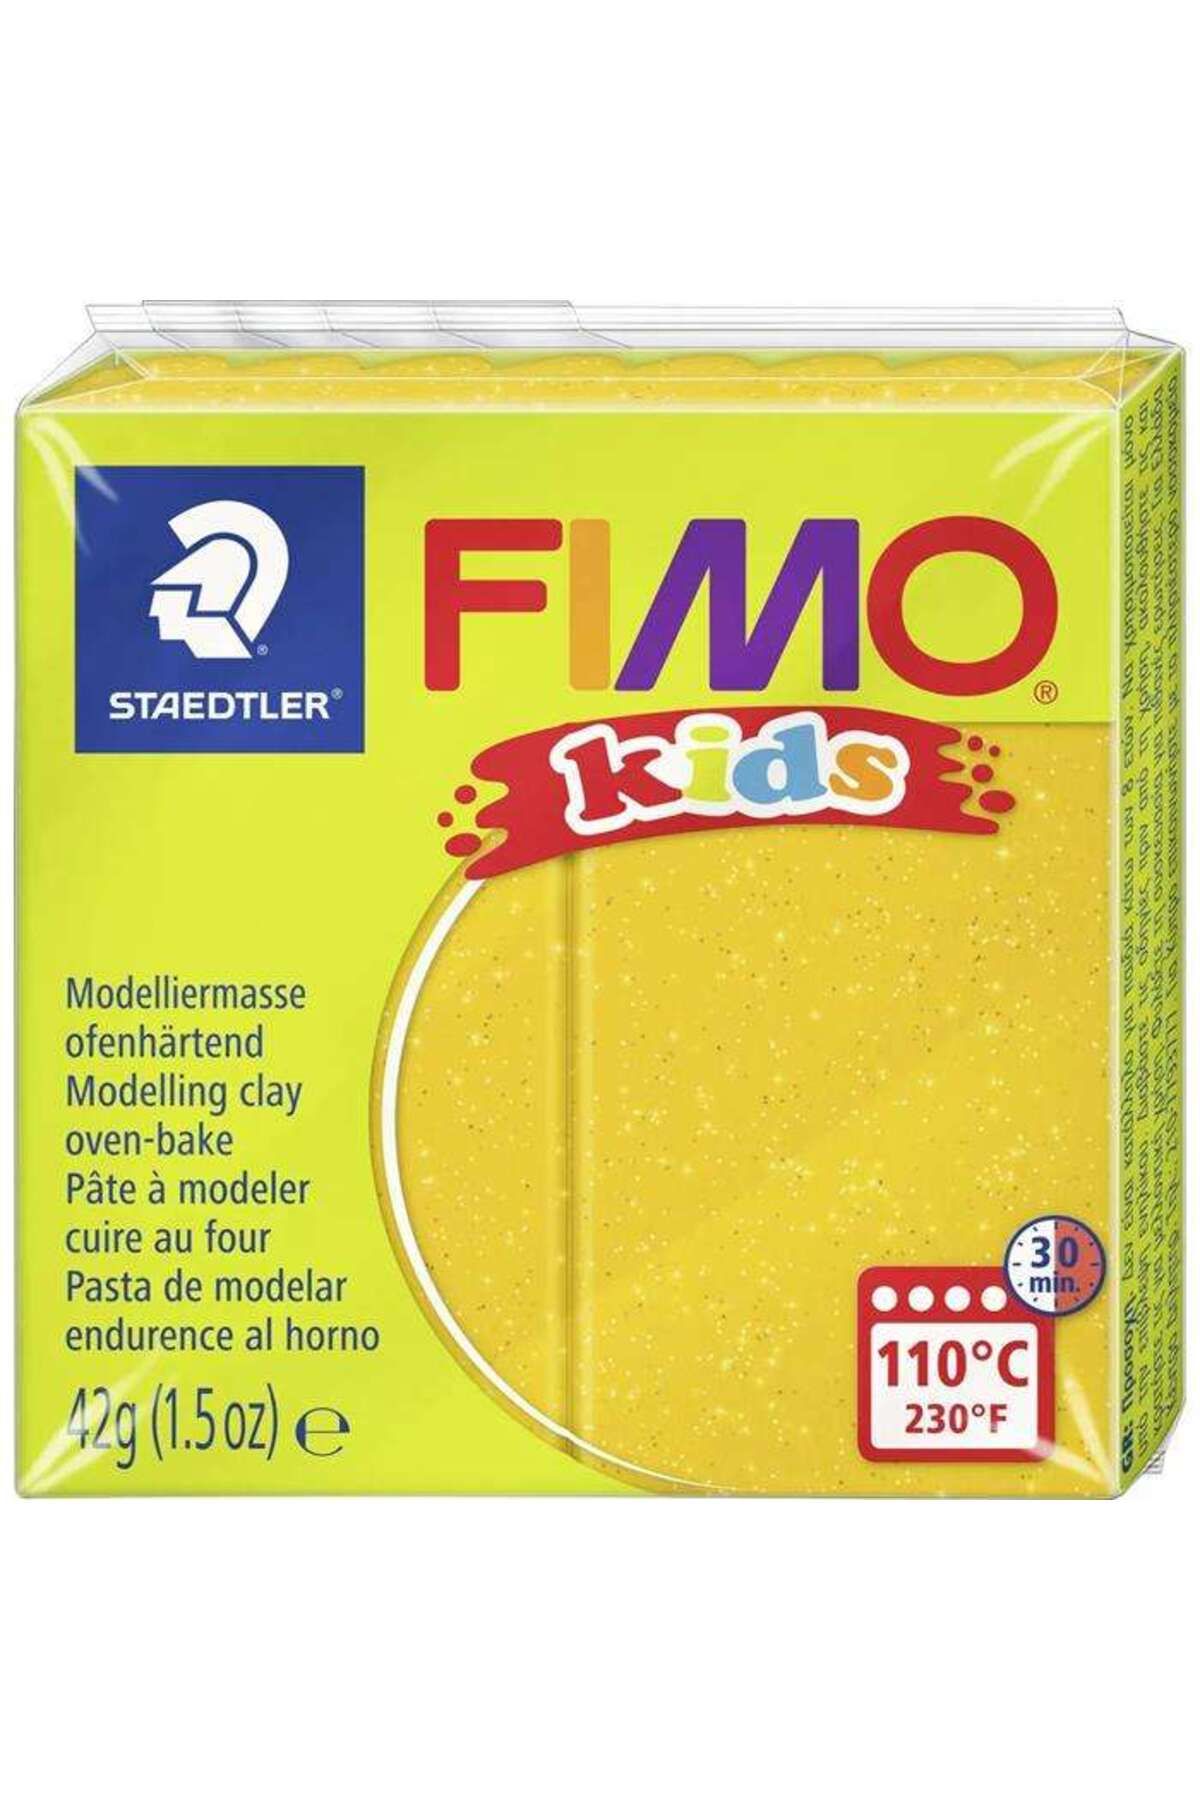 Staedtler Fimo Kids Modelleme Kili 42 g Glitter Gold 112